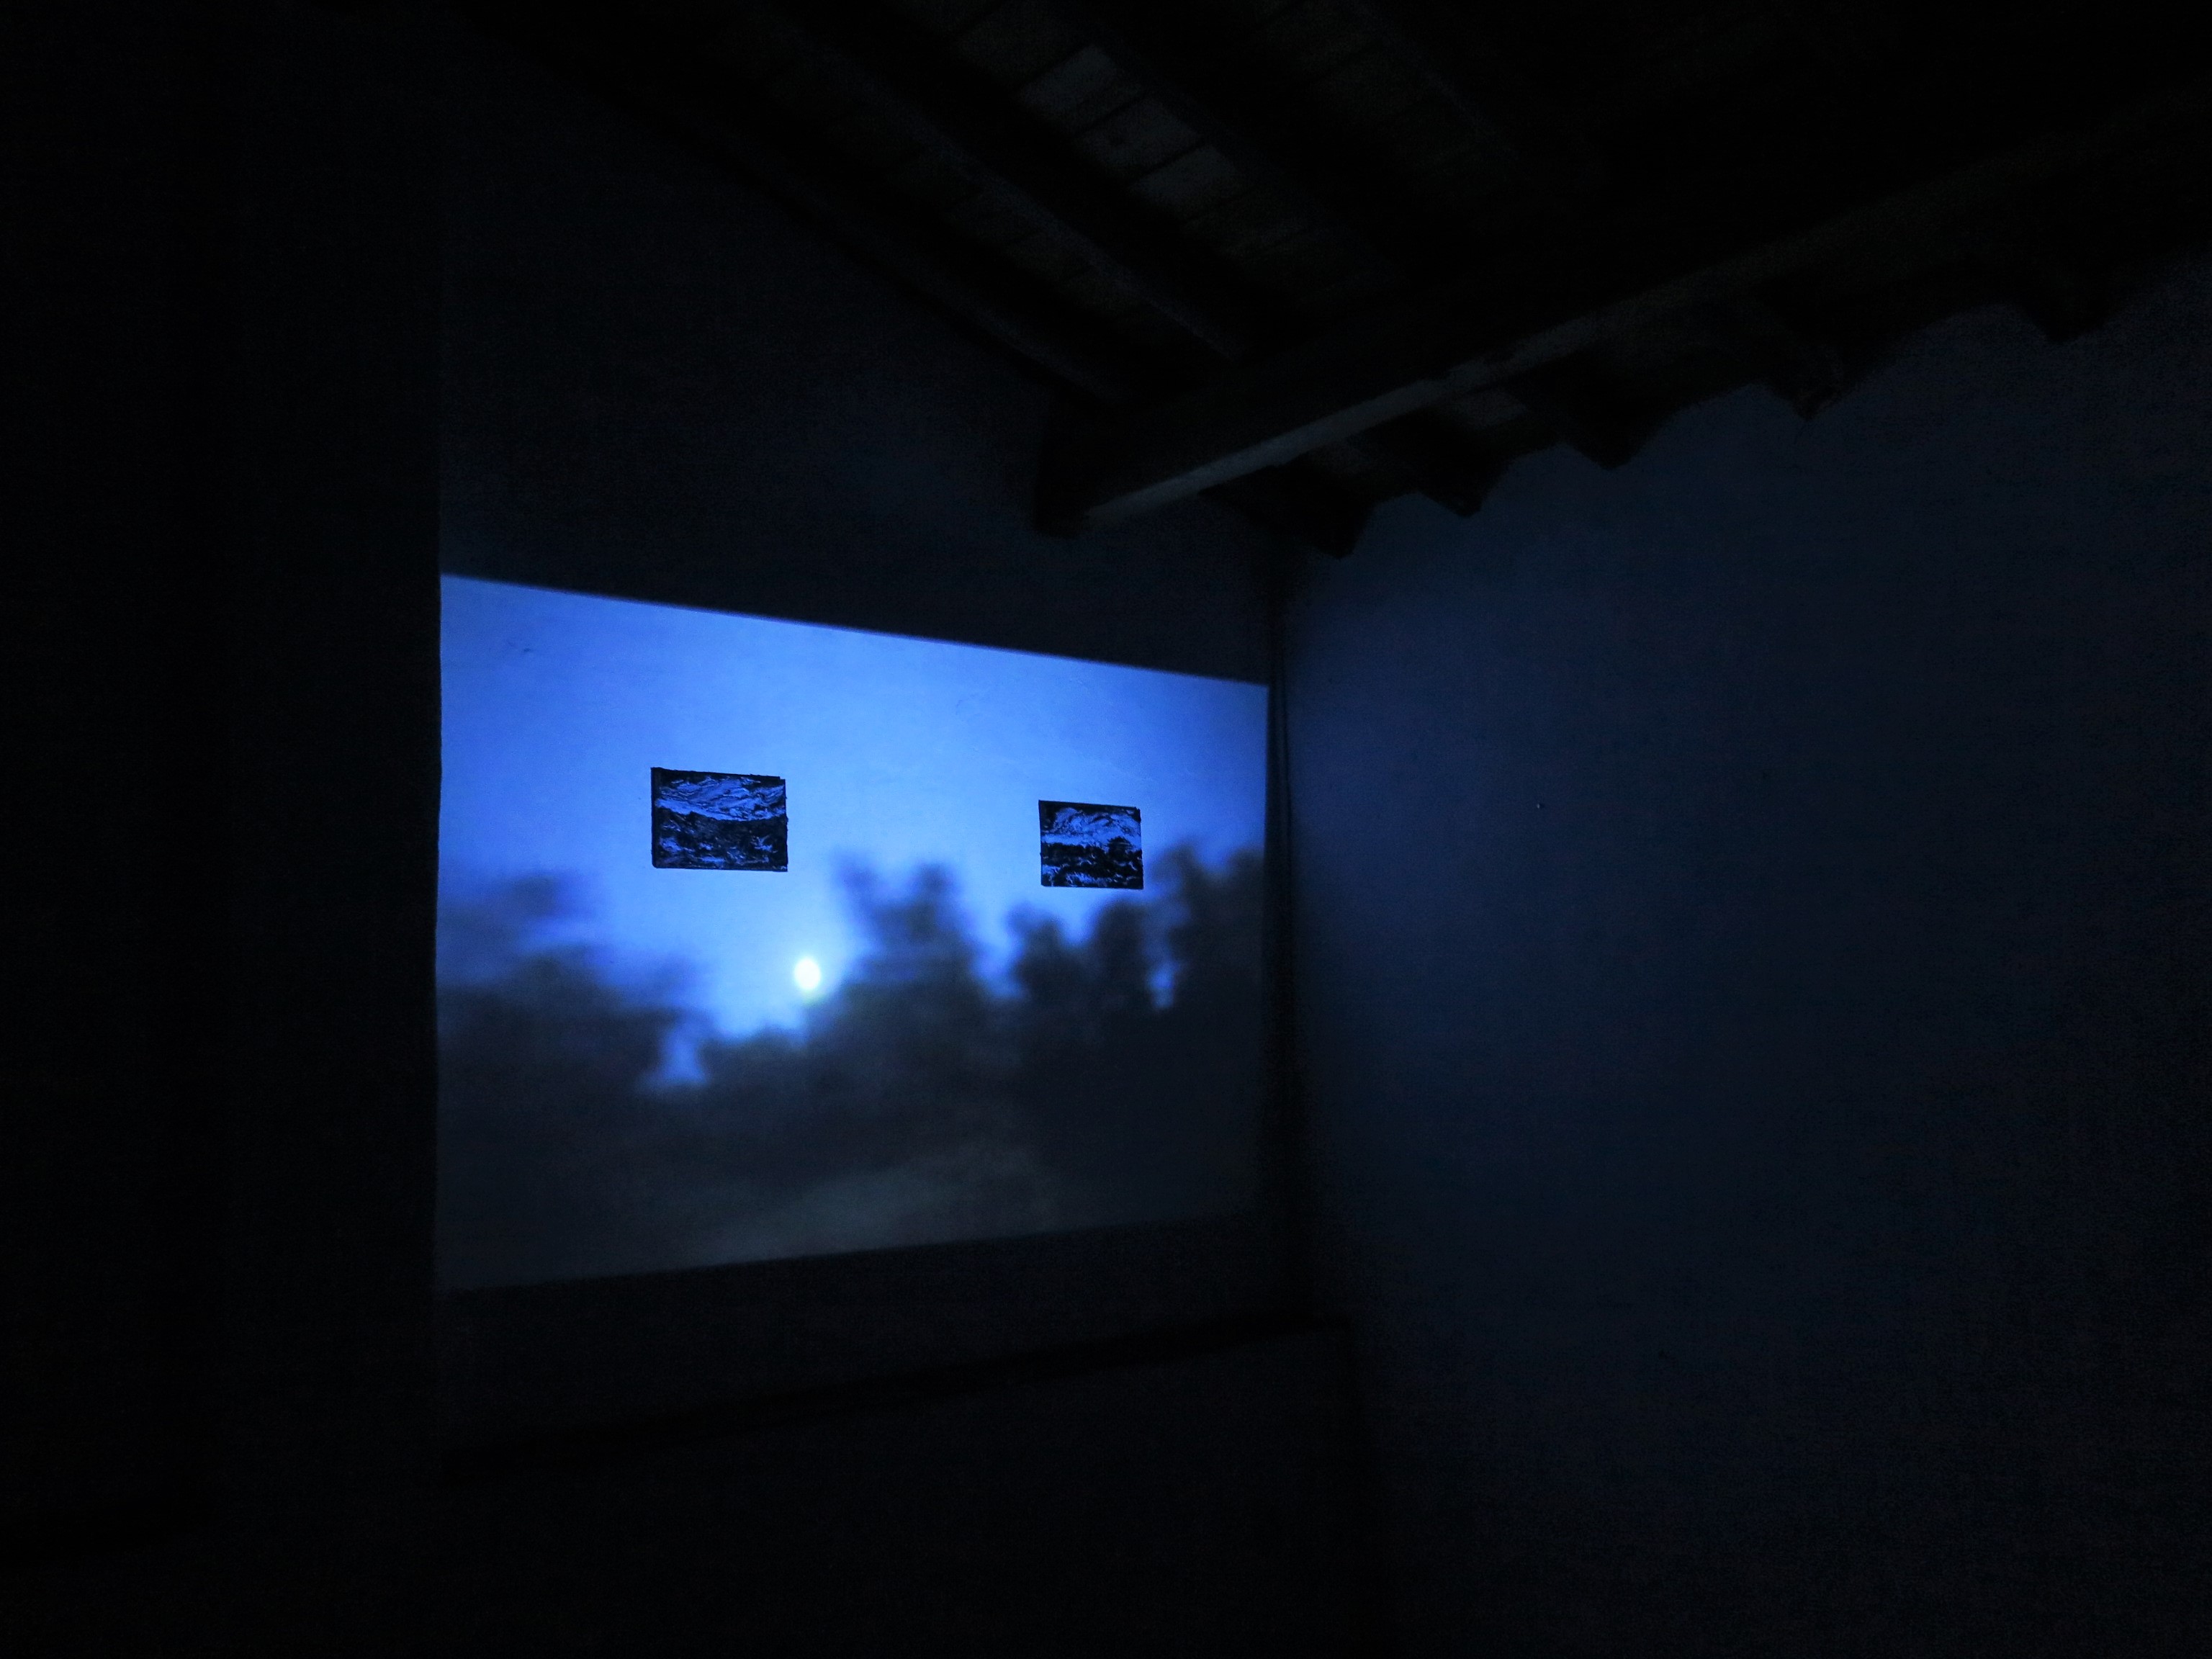 Presentation of the installation & short film "Lua Cheia - O tempo está passando", Fundacao Obras, Portugal (2018